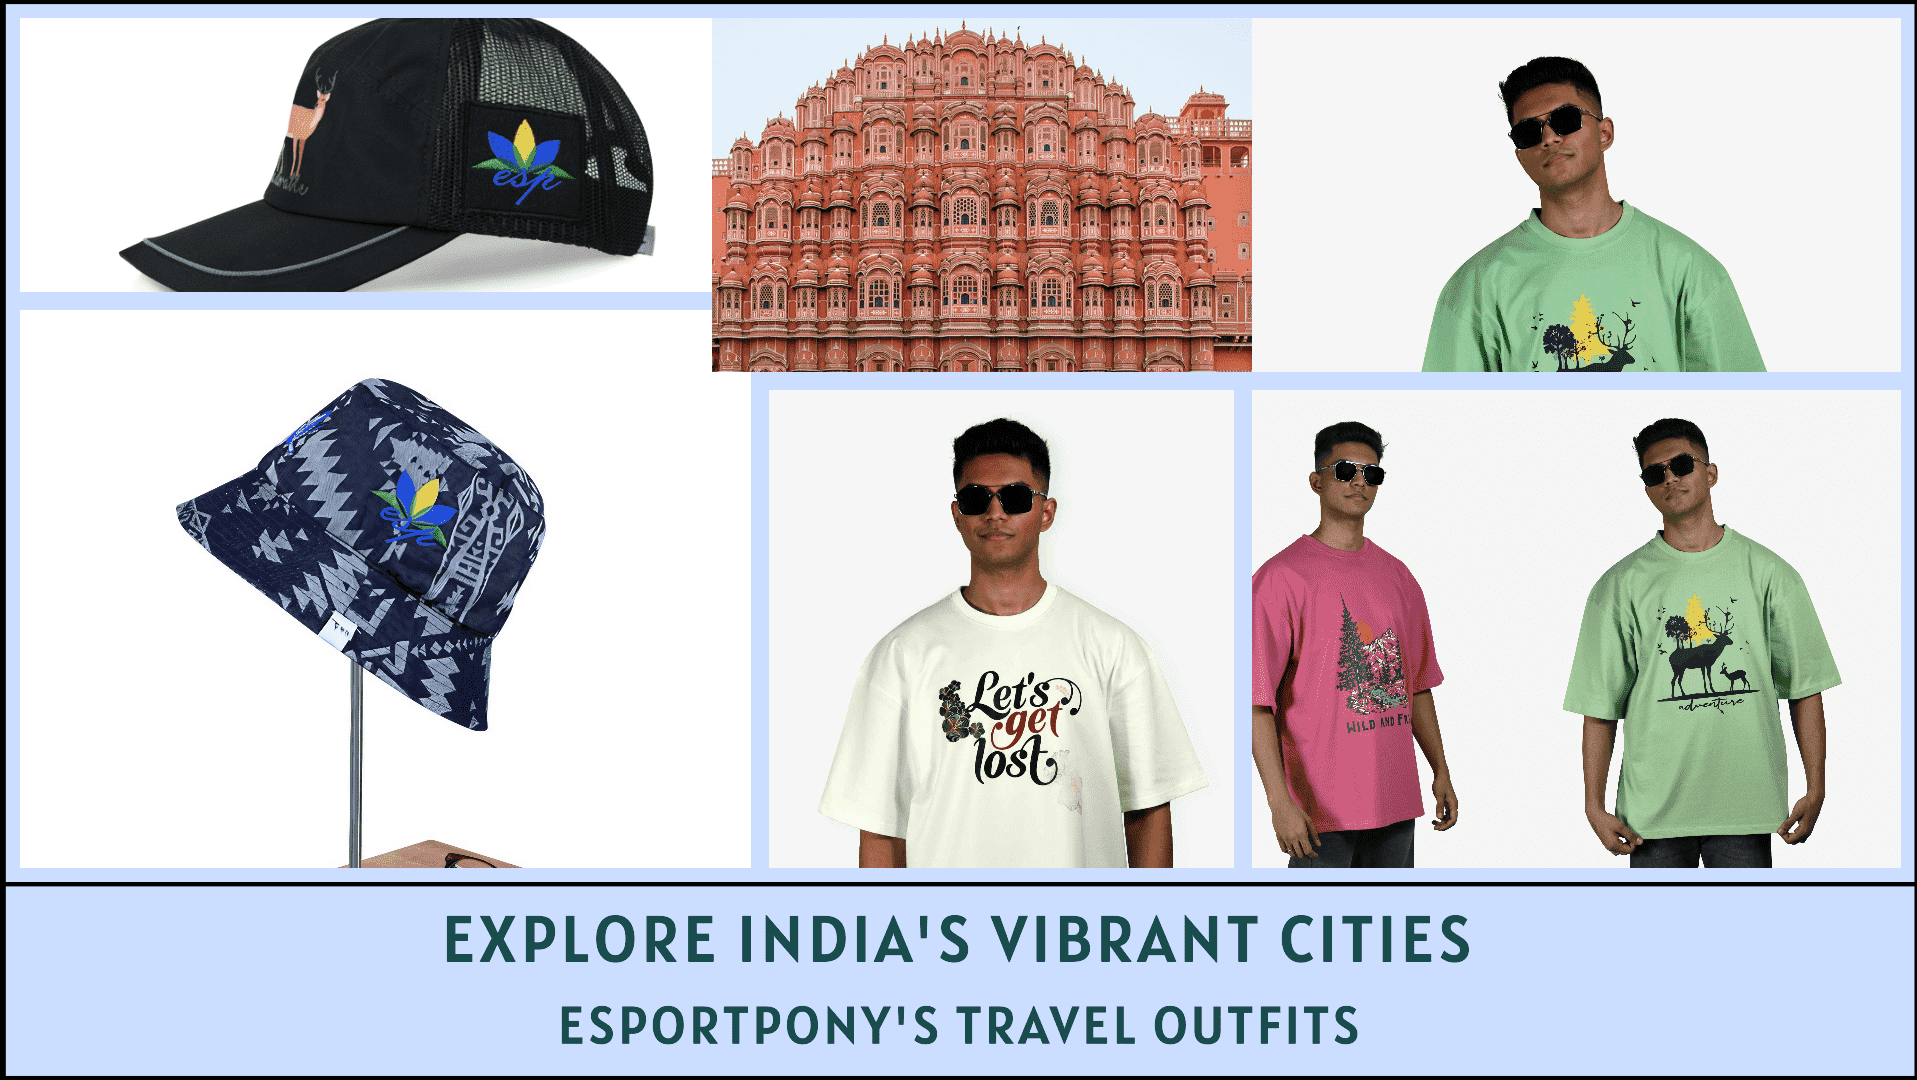 Explore India's Vibrant cities with Esportpony